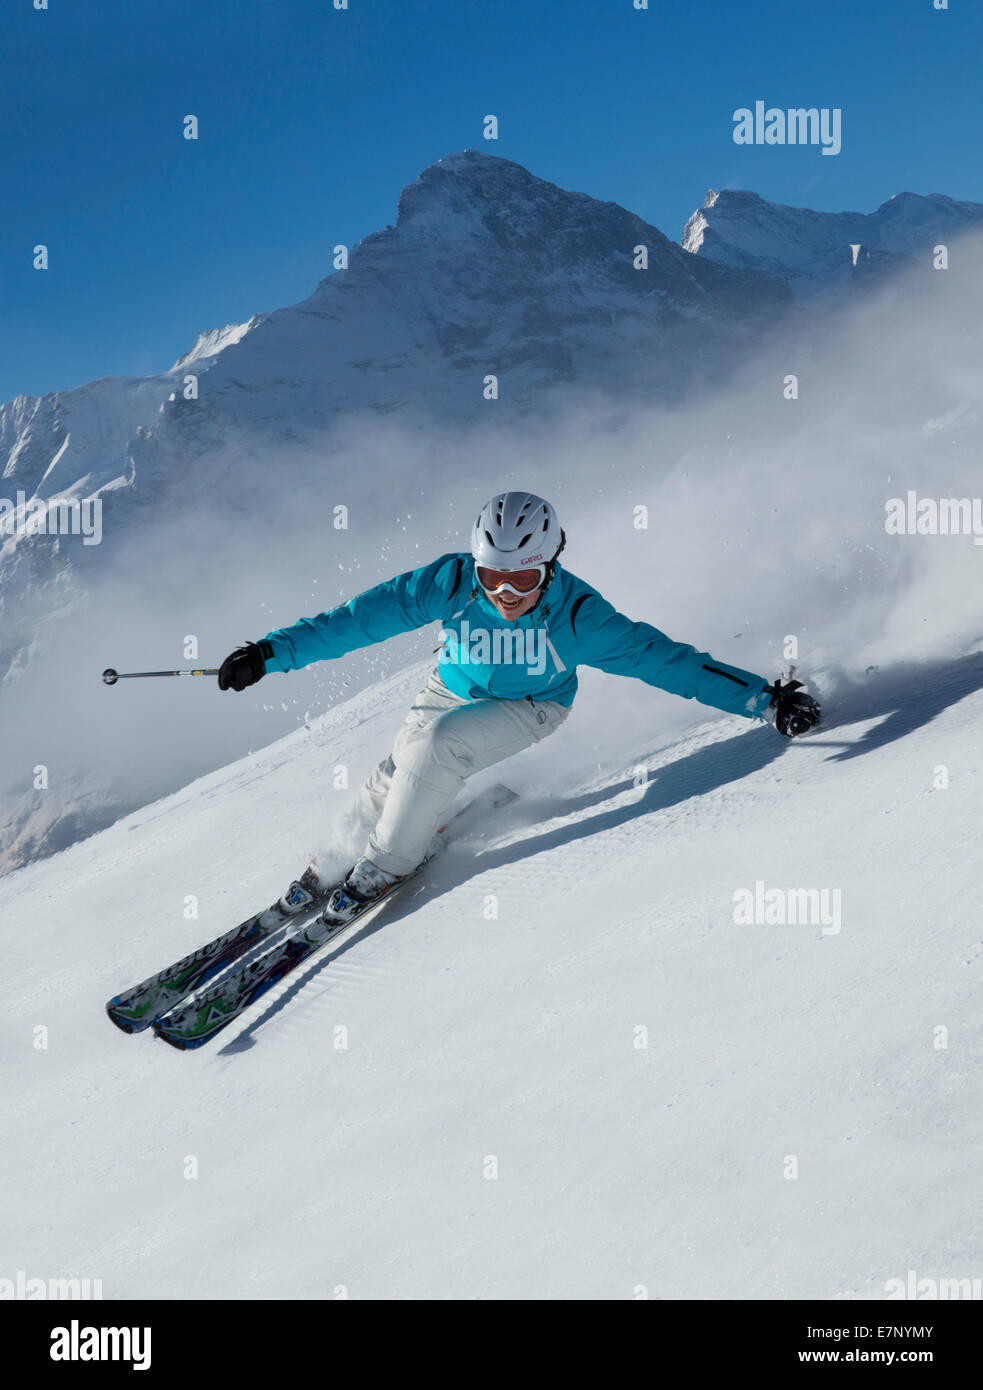 Esquí, esquí, Grindelwald, Ridge, el Eiger, Jungfrau, montaña, montaña, esquí, esquí, carving, el invierno, los deportes de invierno, cantón de Berna. Foto de stock